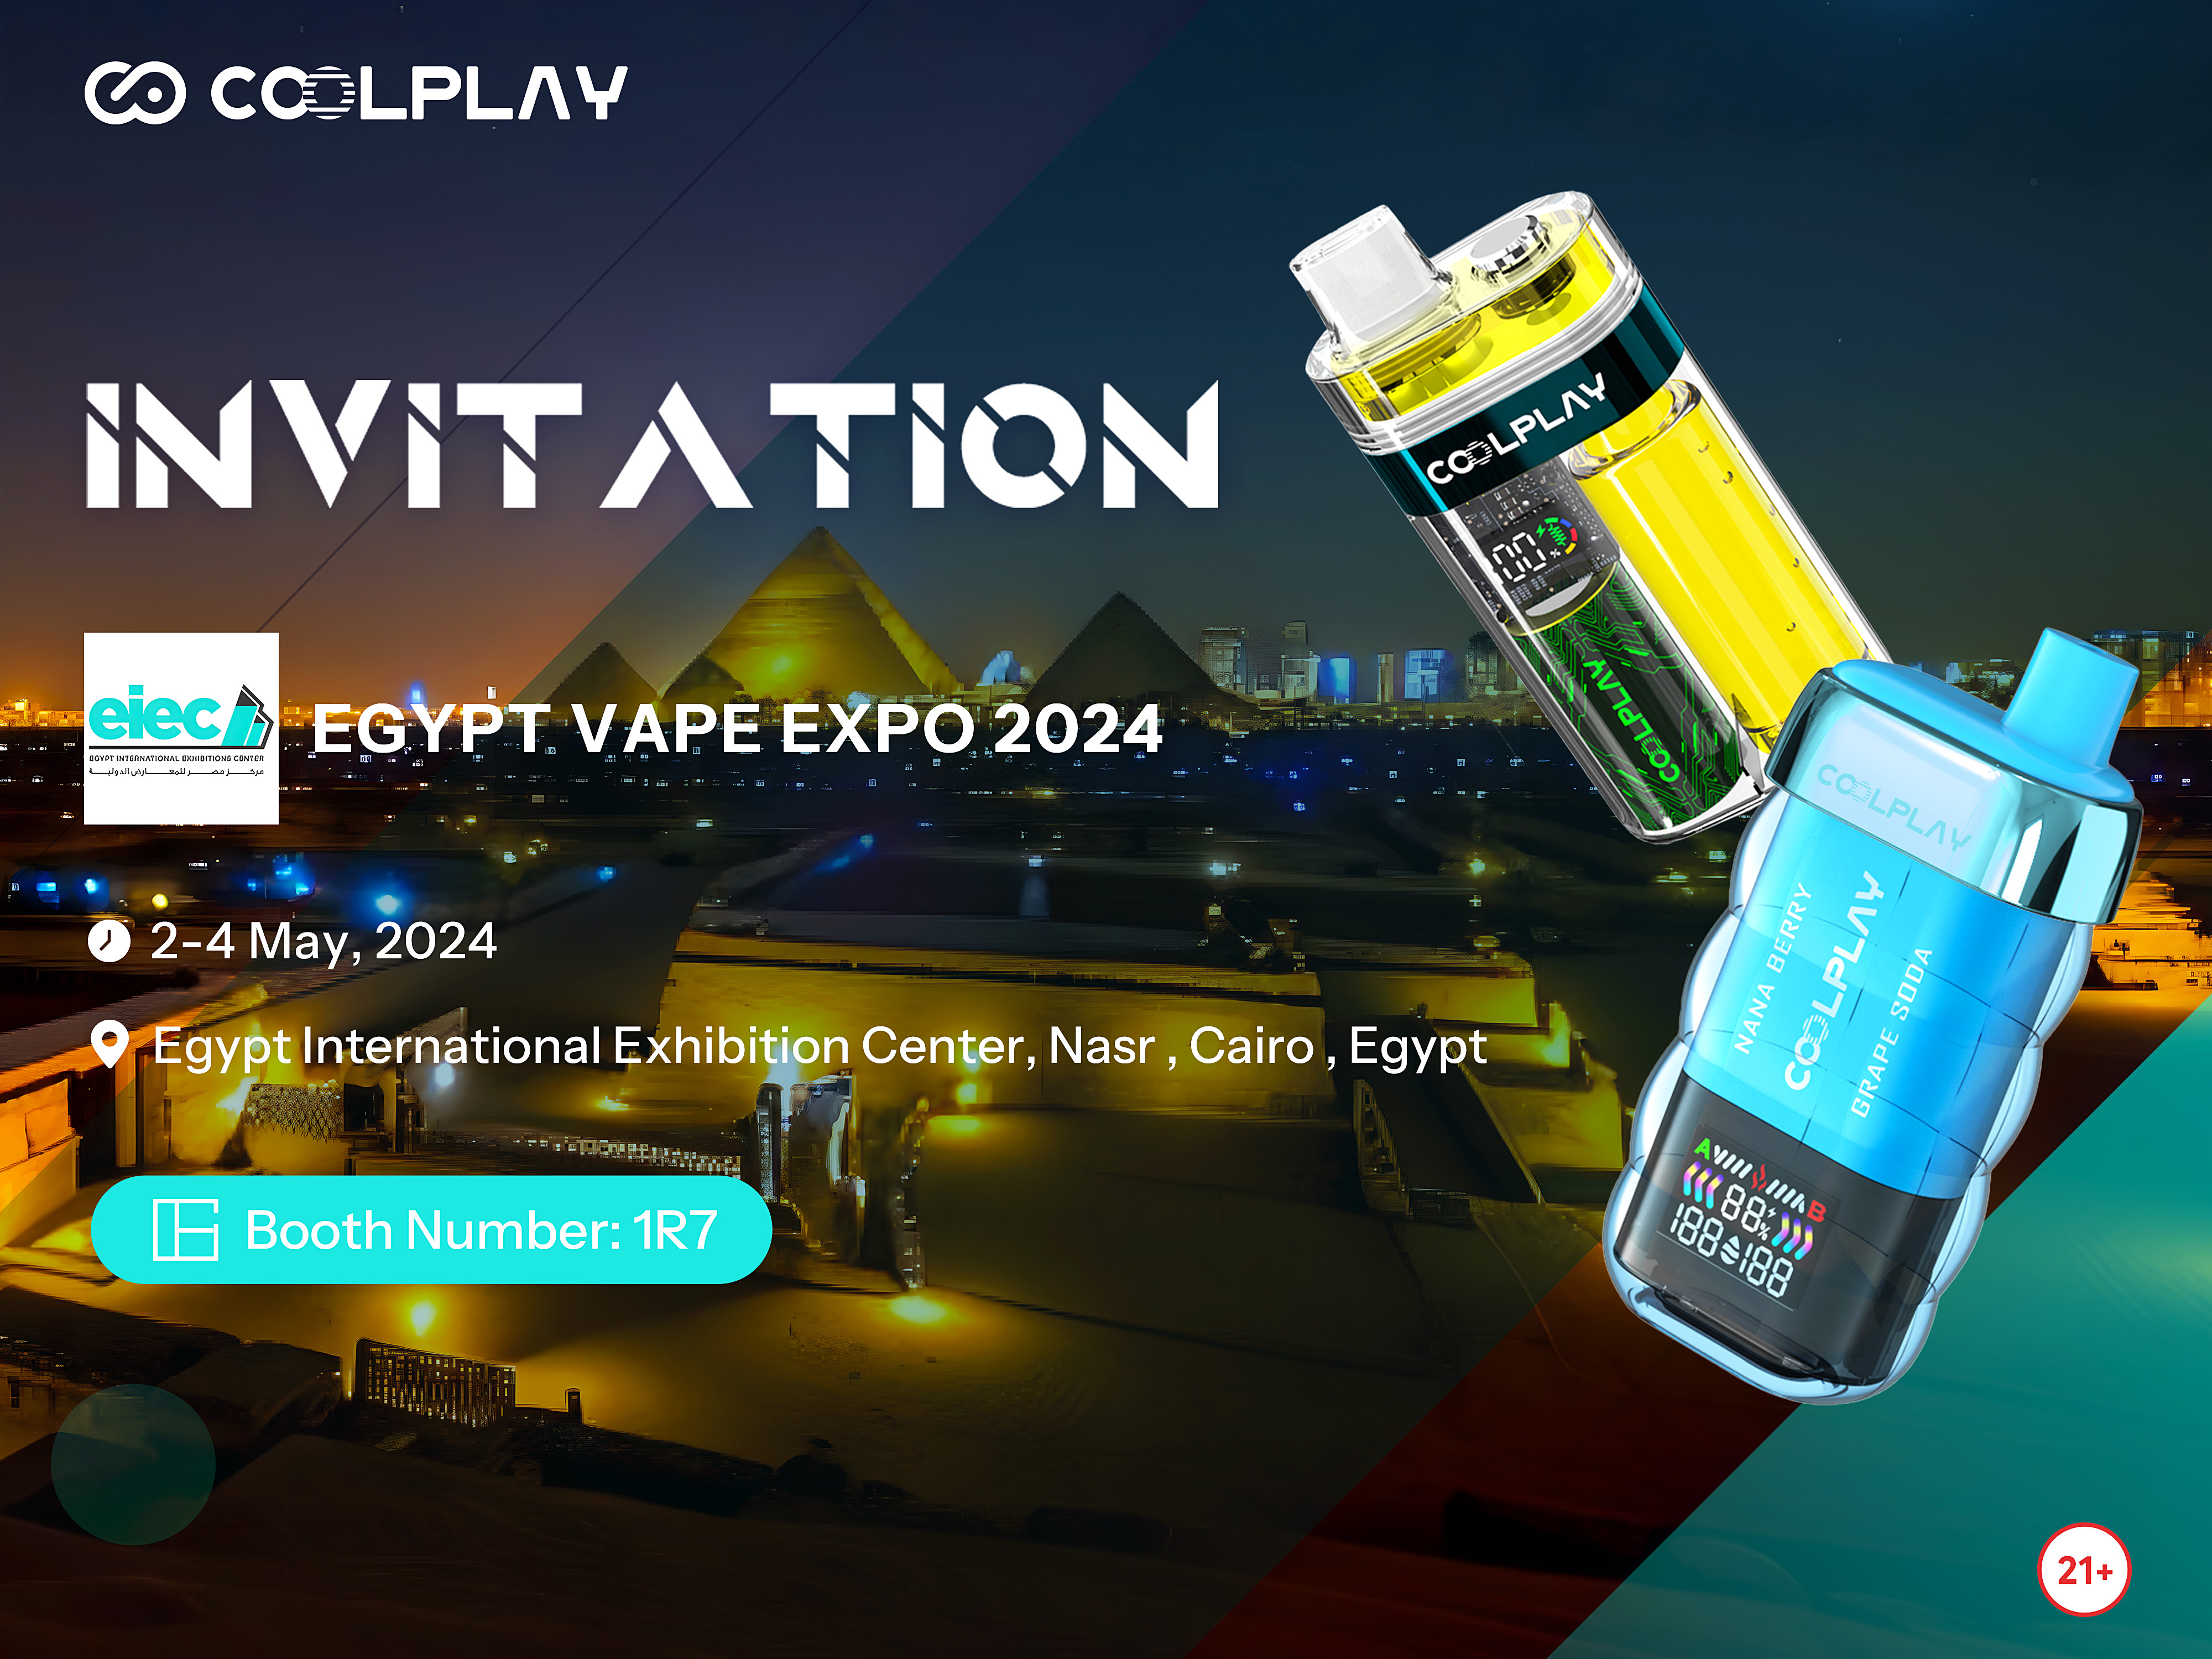 EGYPT VAPE EXPO 2024